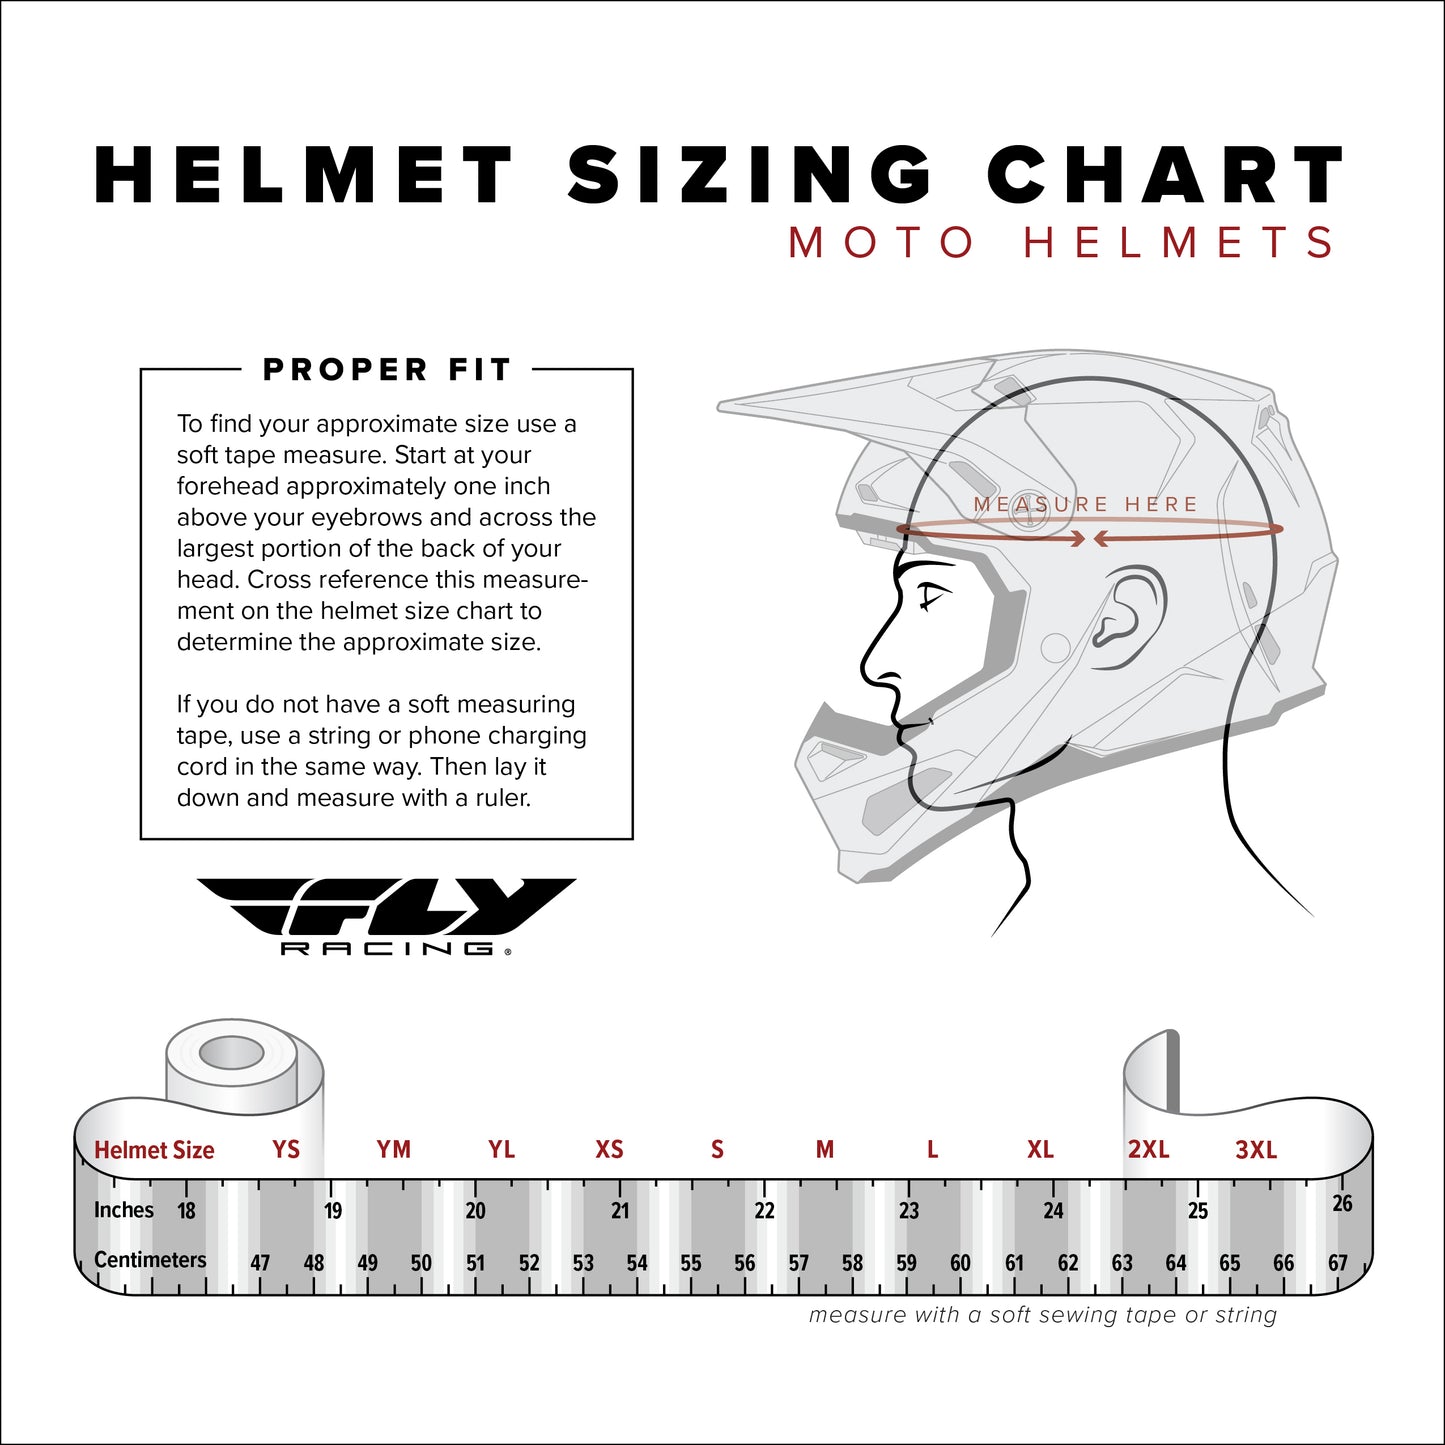 Fly Racing Helmet Kinetic Menace 2024